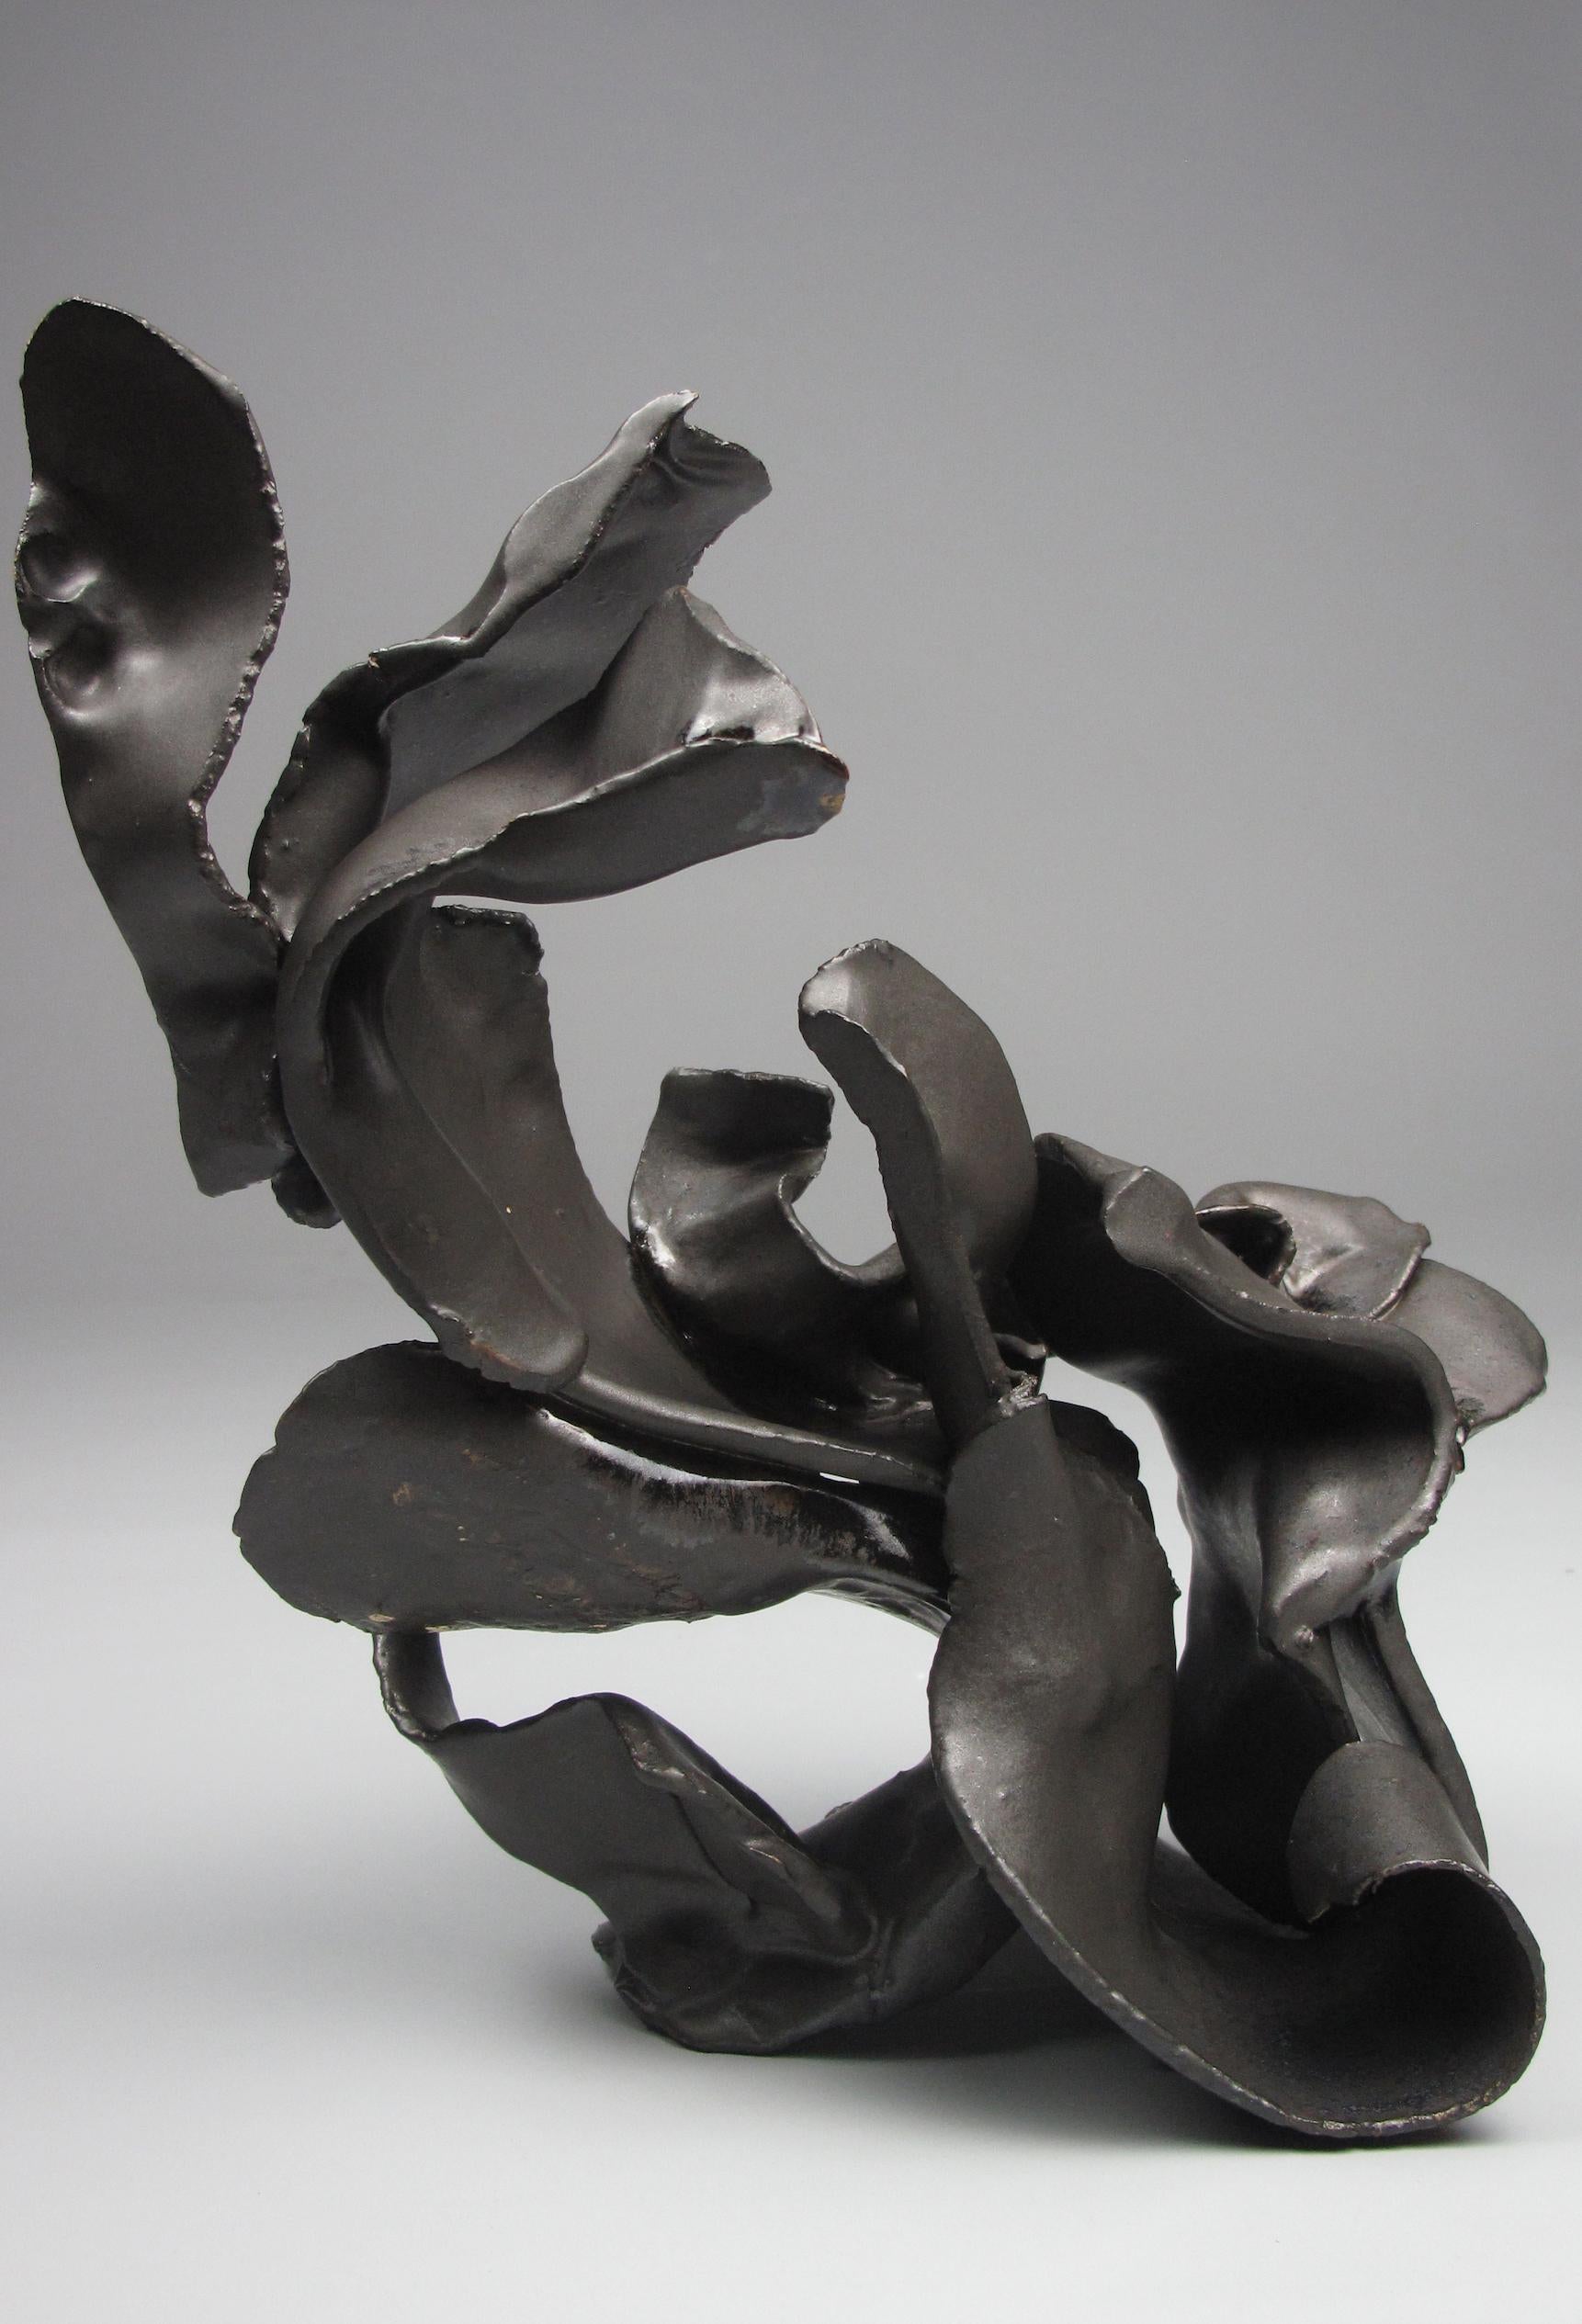 Sara Fine-Wilson Abstract Sculpture - "Tuck", gestural, ceramic, sculpture,  matte black, amber, stoneware